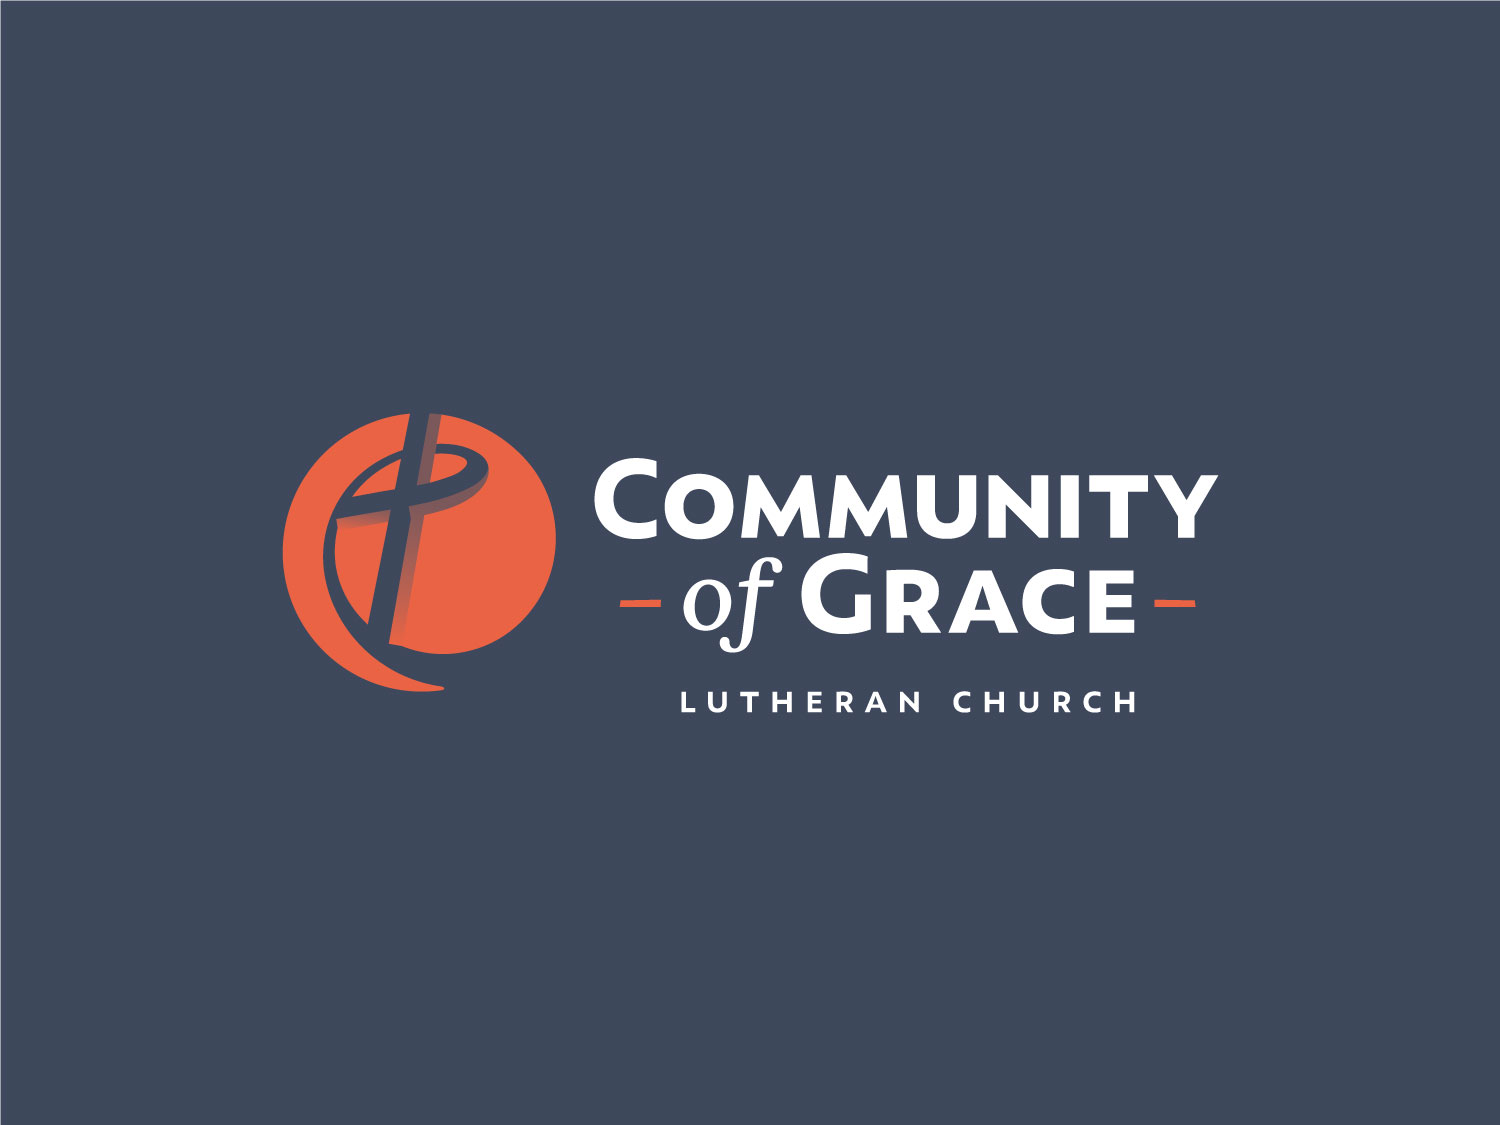 Community of Grace brandmark reversed